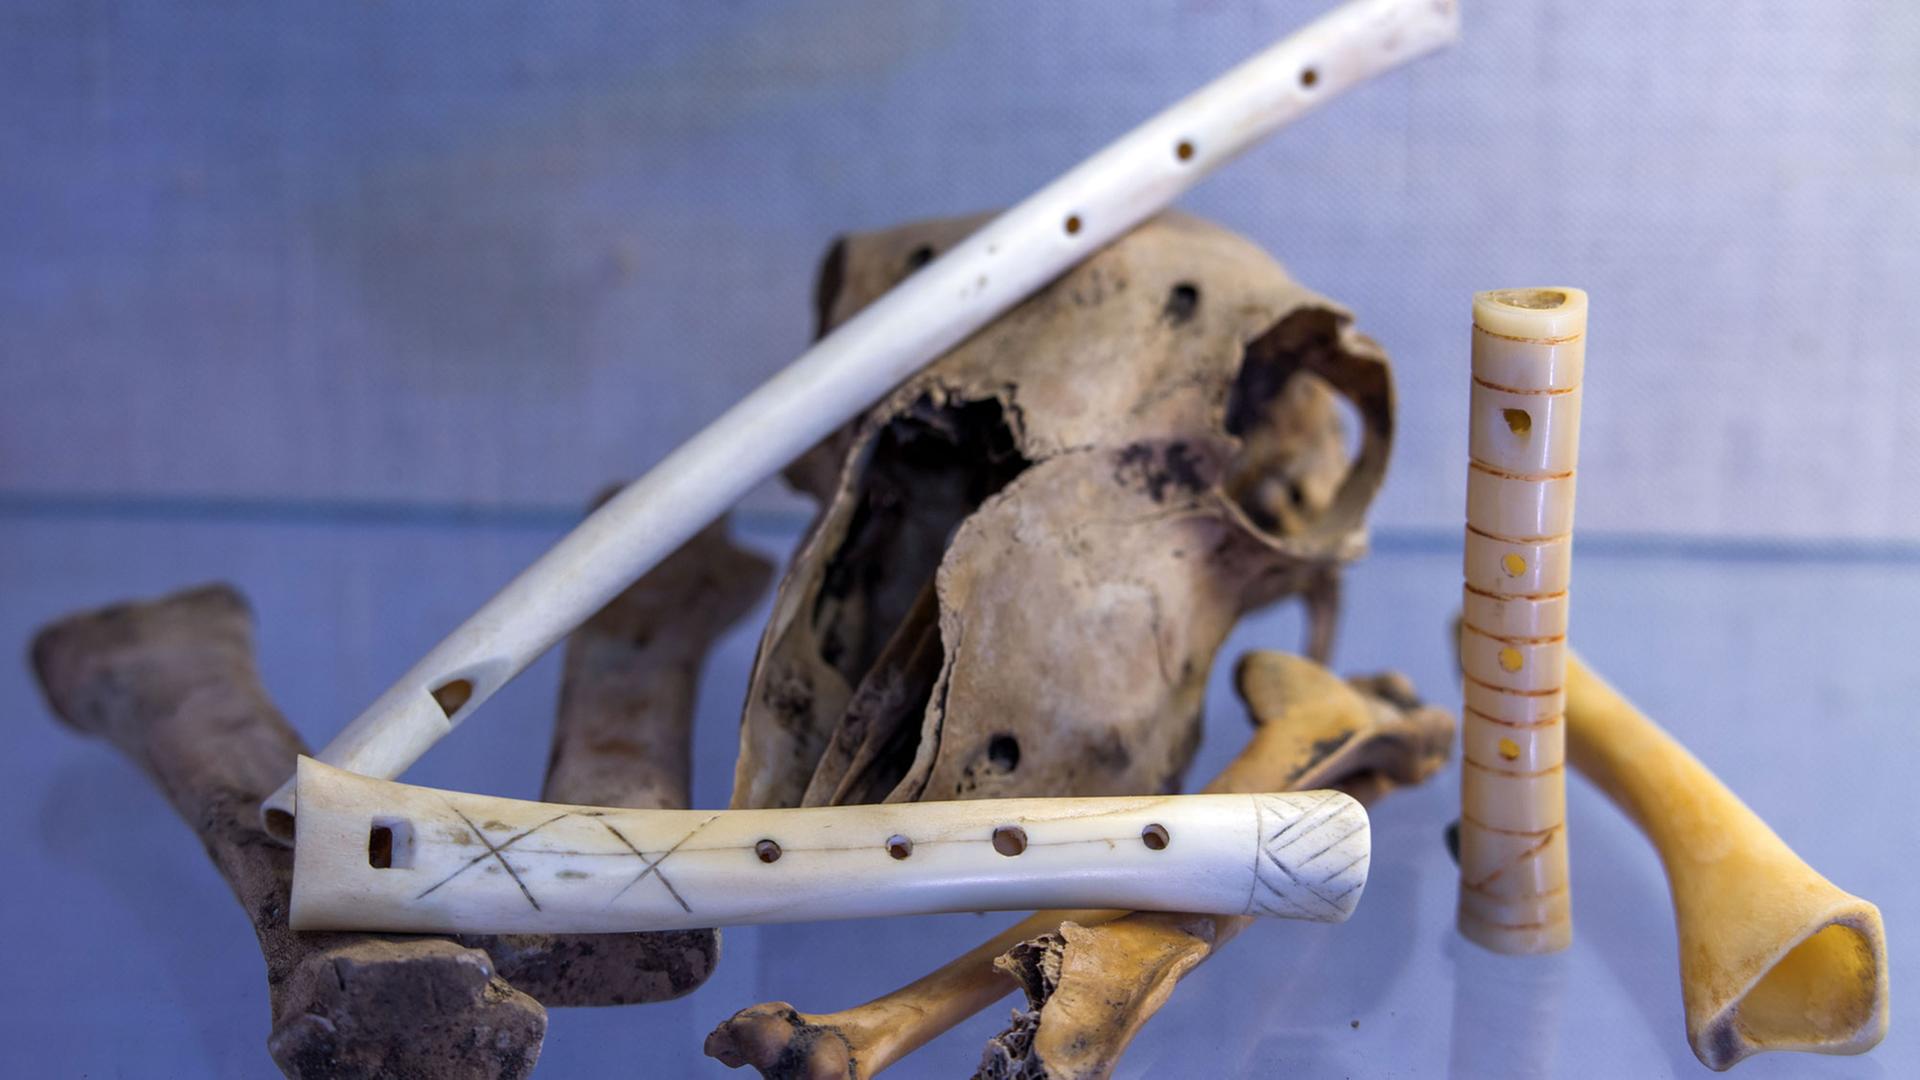 Nachgebaute Knochenflöten, aufgenommen am 02.07.2015 in der Werkstatt von Instrumentenbauer Ralf Gehler in Schwerin (Mecklenburg-Vorpommern)